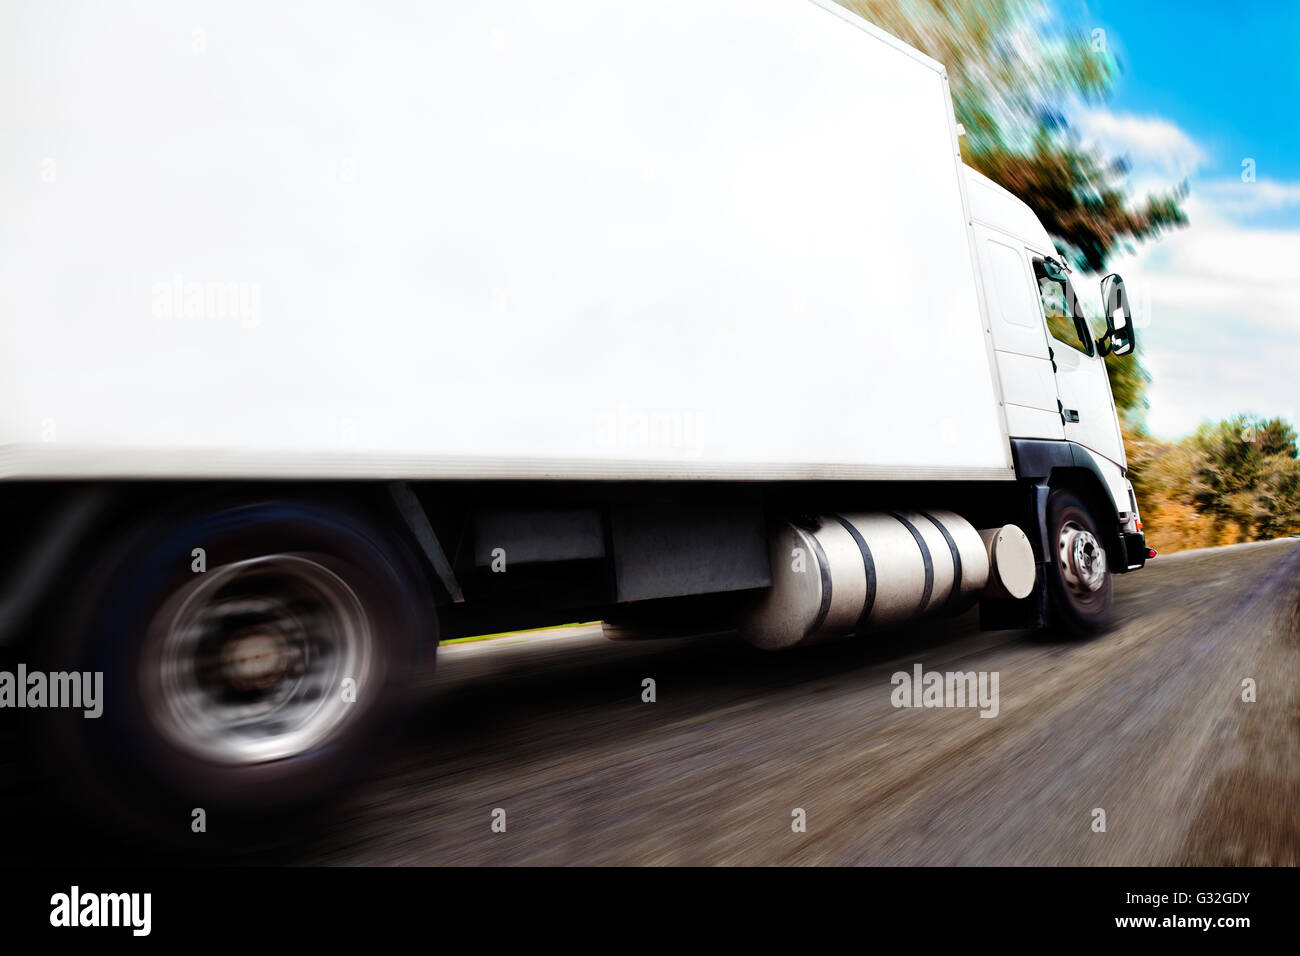 Camion che trasportano merci.Close up immagine di ruote e rim Foto Stock